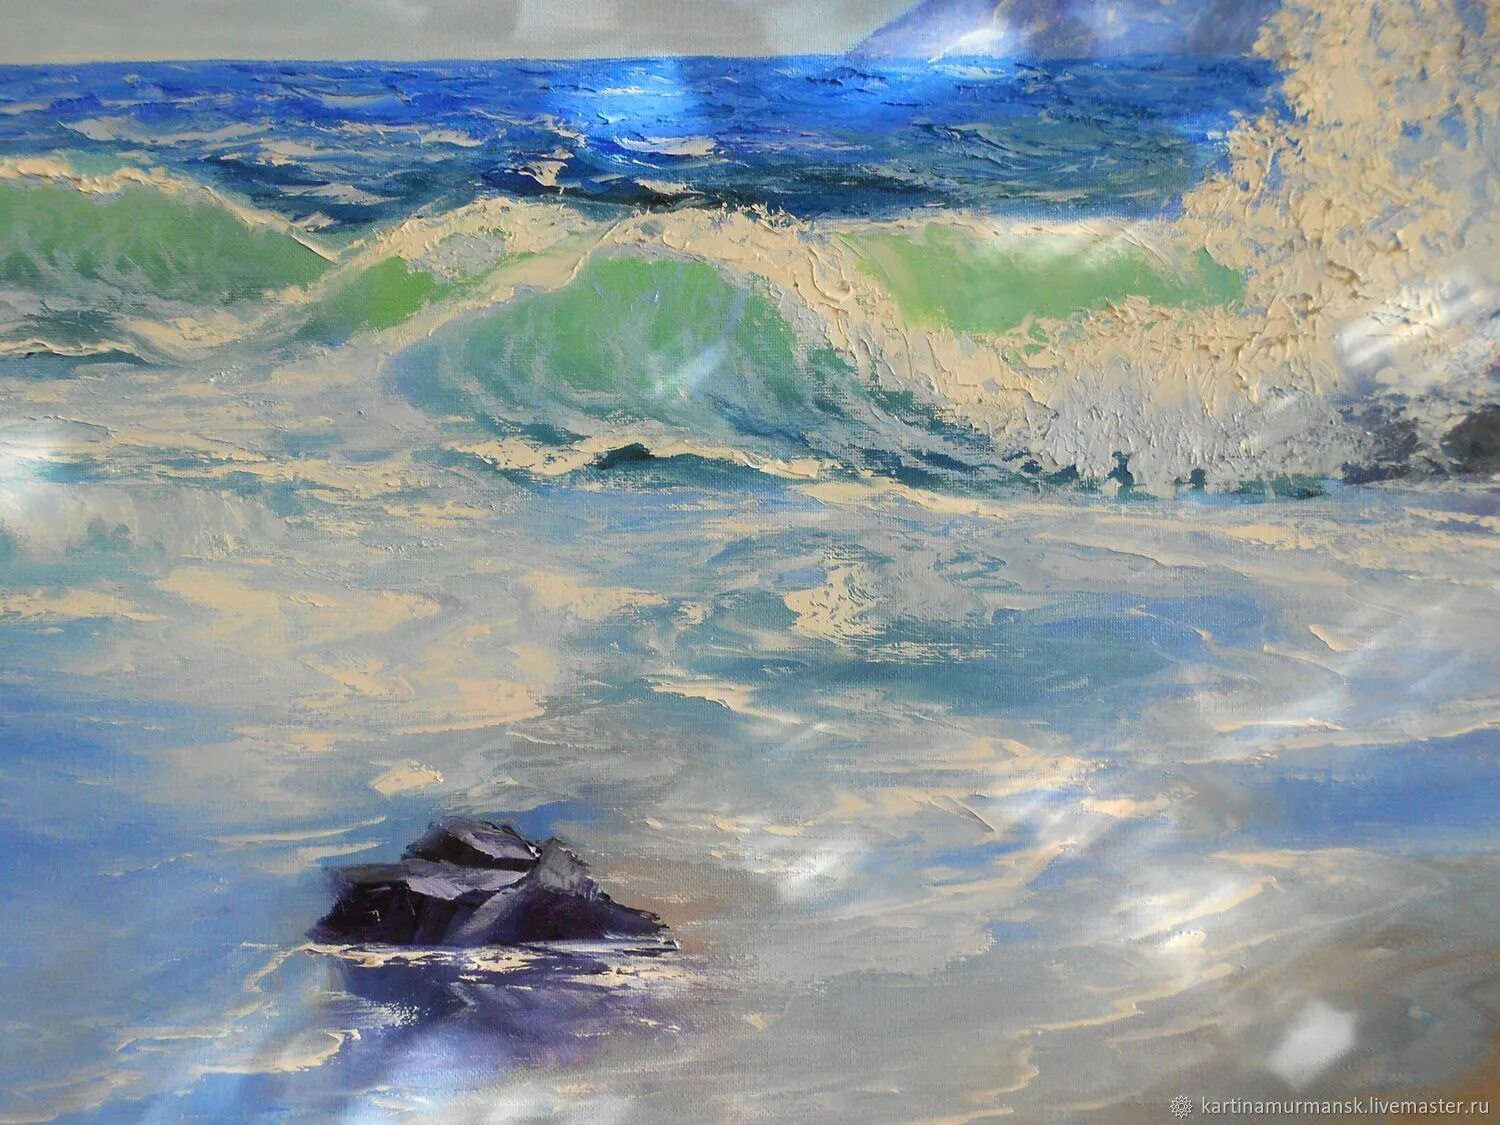 Картины морская стихия. Мурманск картина море. Акварель пейзажи с морем Италия. Морская стихия ветер перемен.